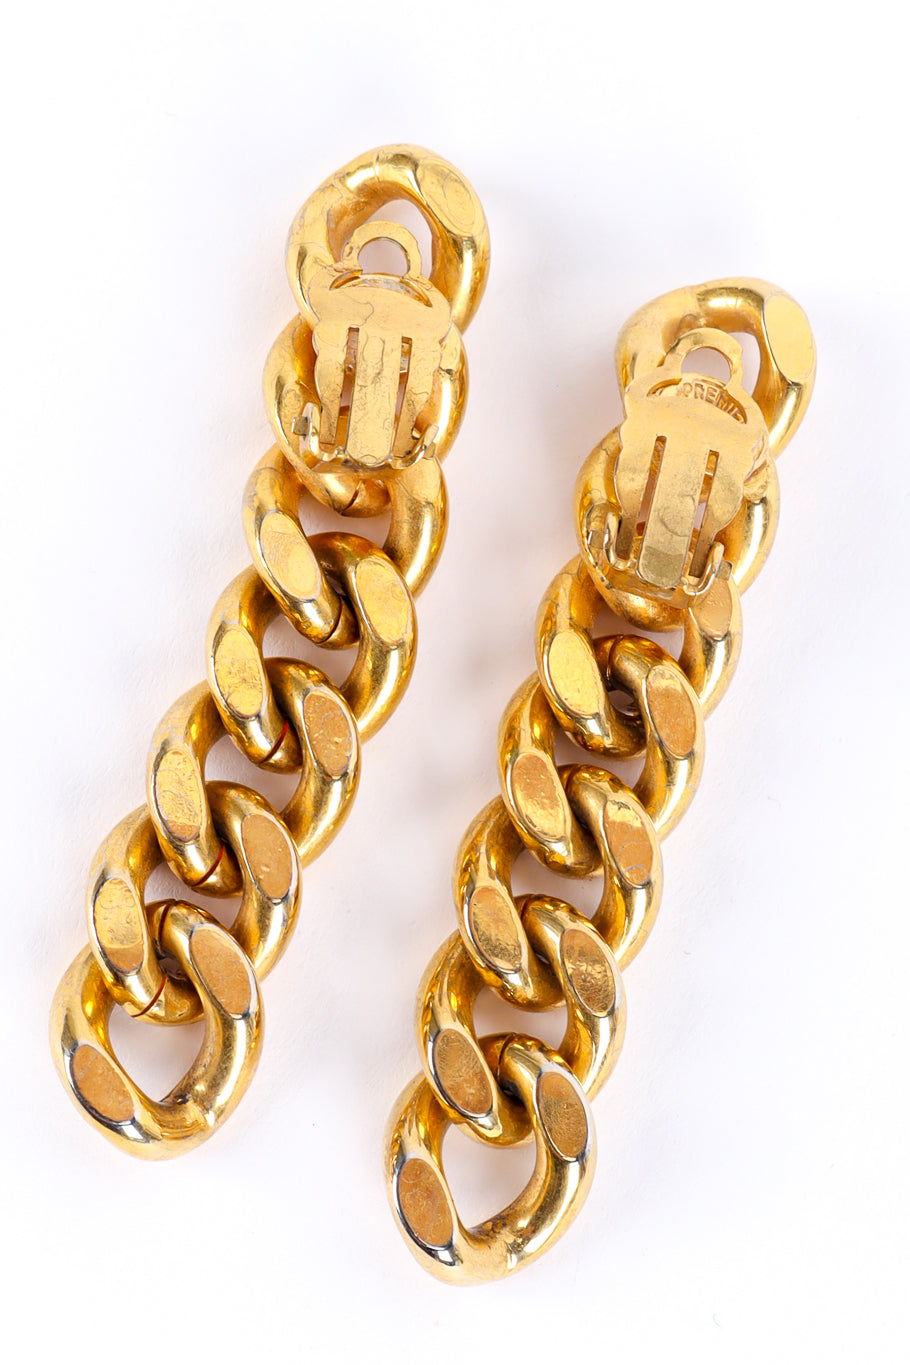 Curb chain link drop earrings by Premier Etage flat lay backs open @recessla